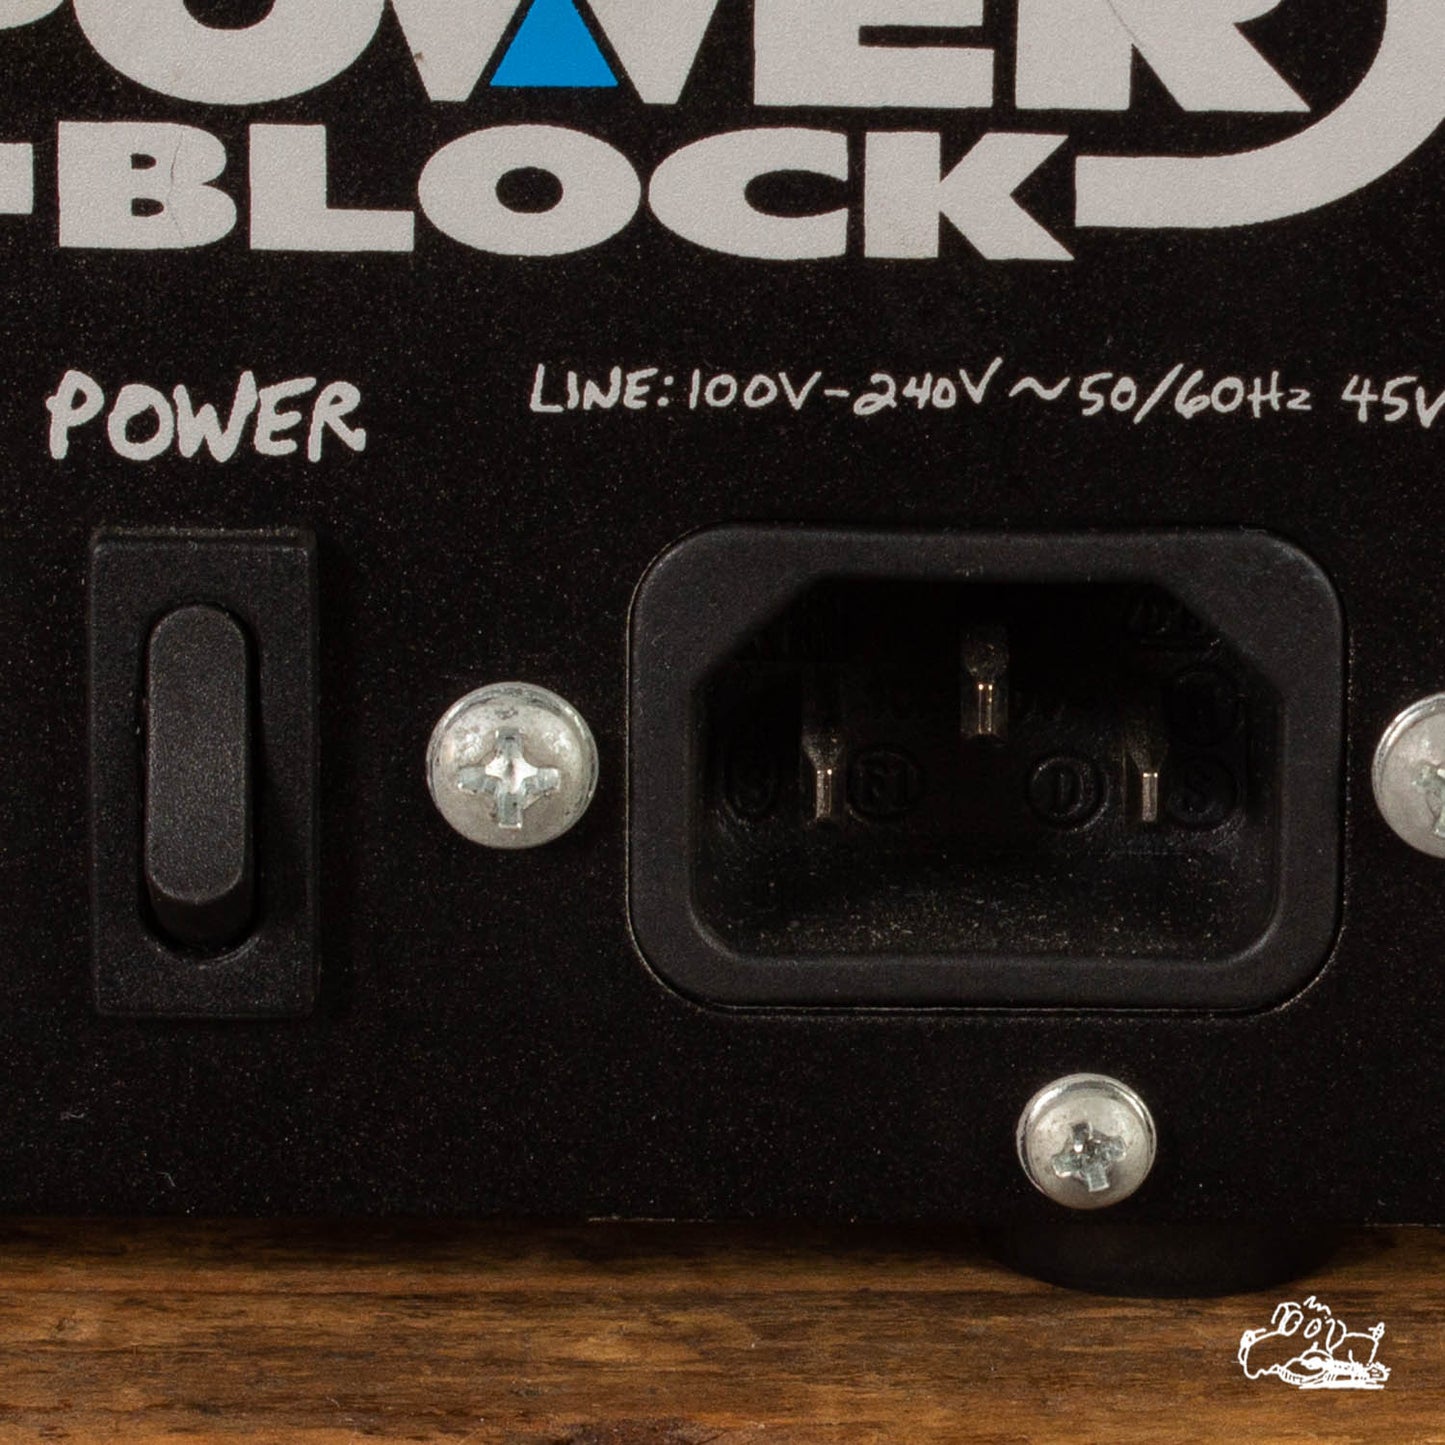 Used Crate CPB150 PowerBlock Stereo Guitar Amp